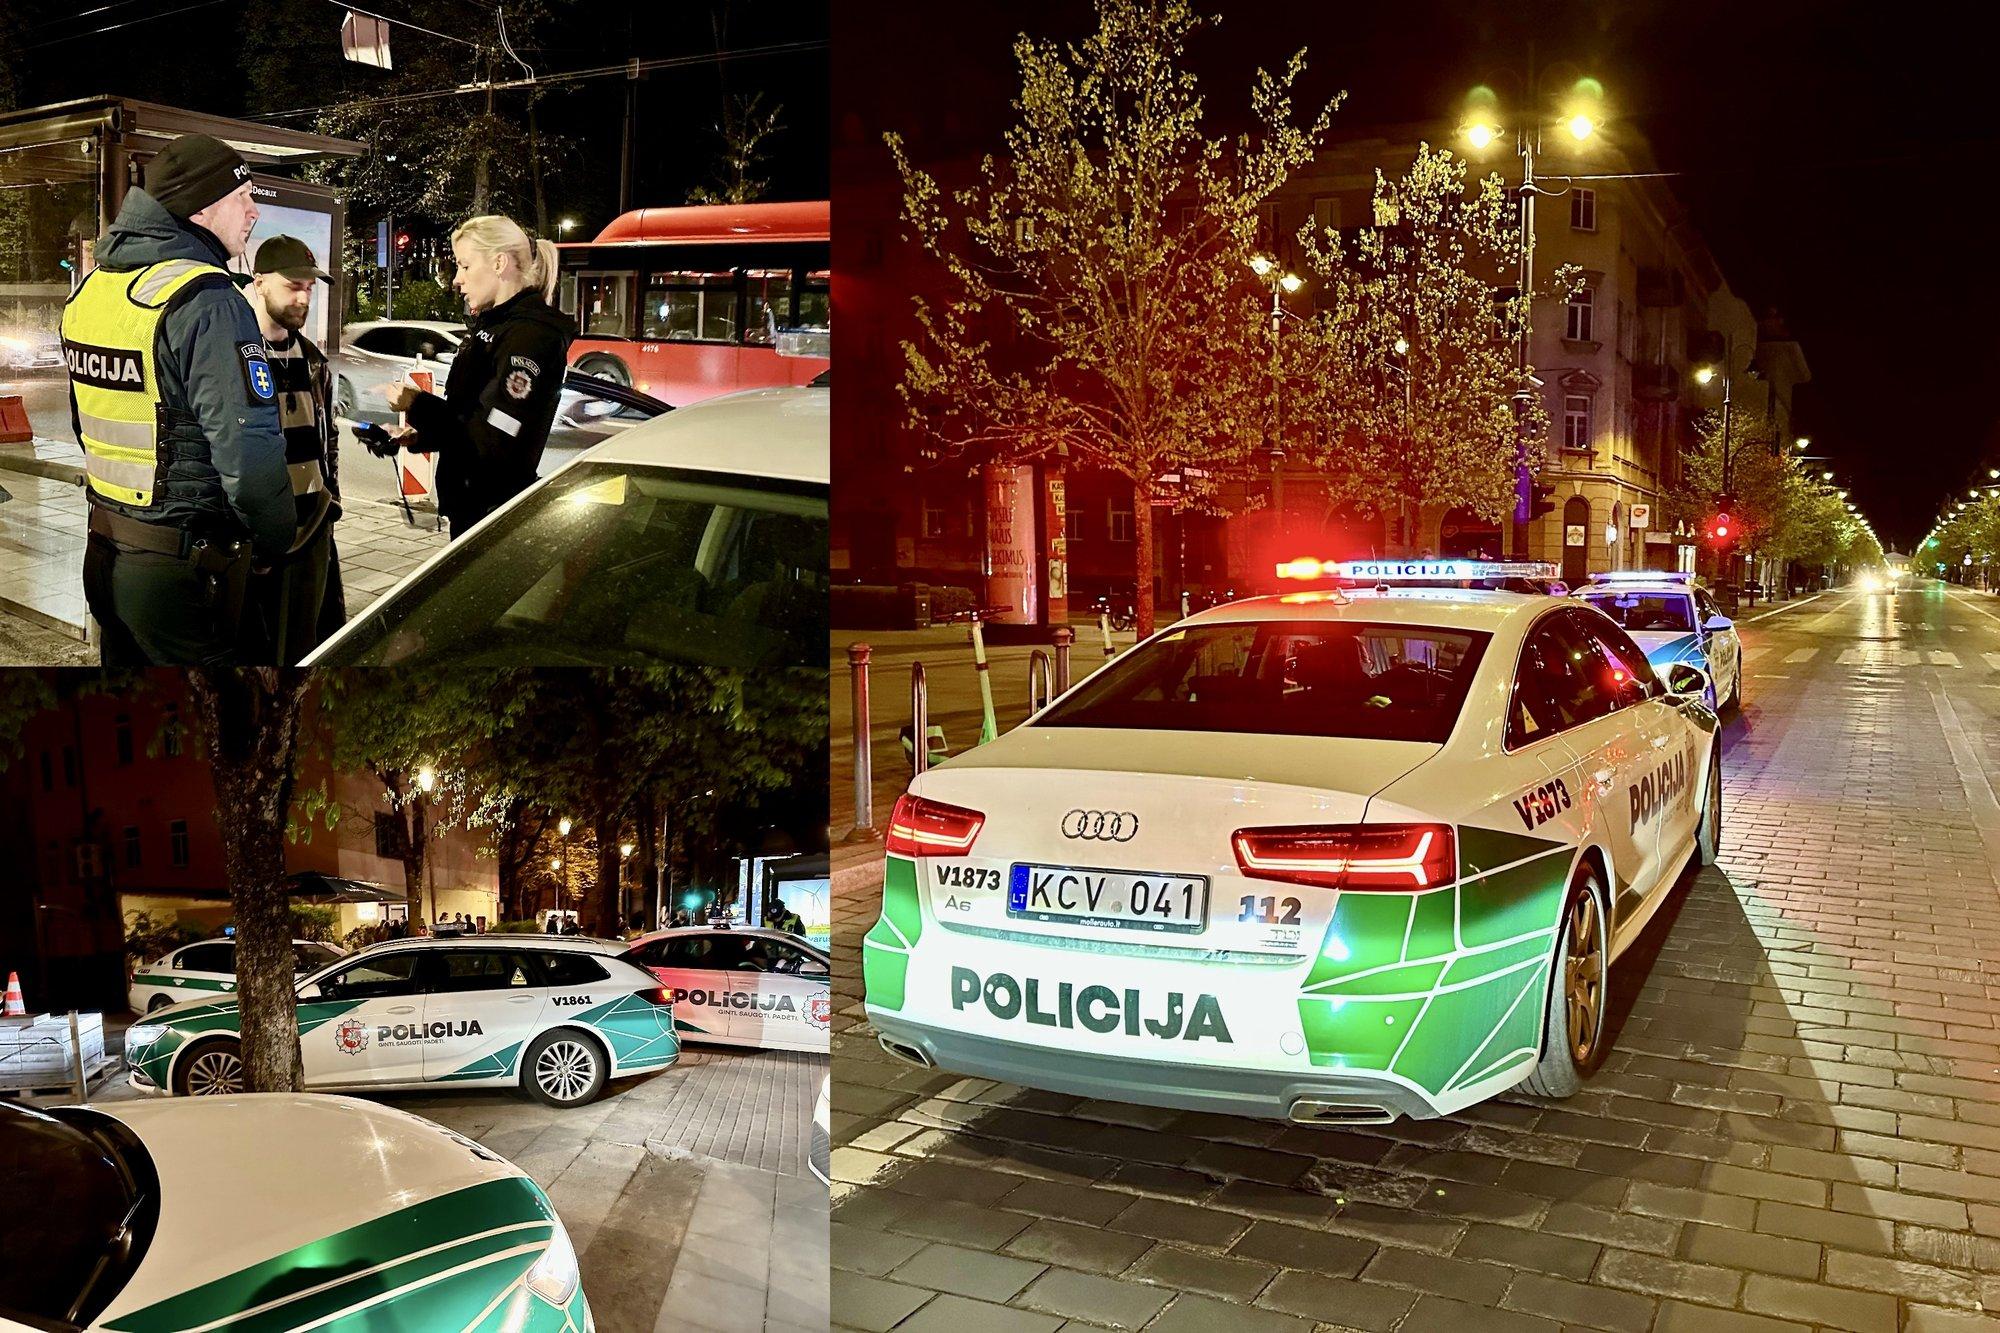 Полицейский рейд в Вильнюсе: попались пьяные водители автомобилей и самокатов